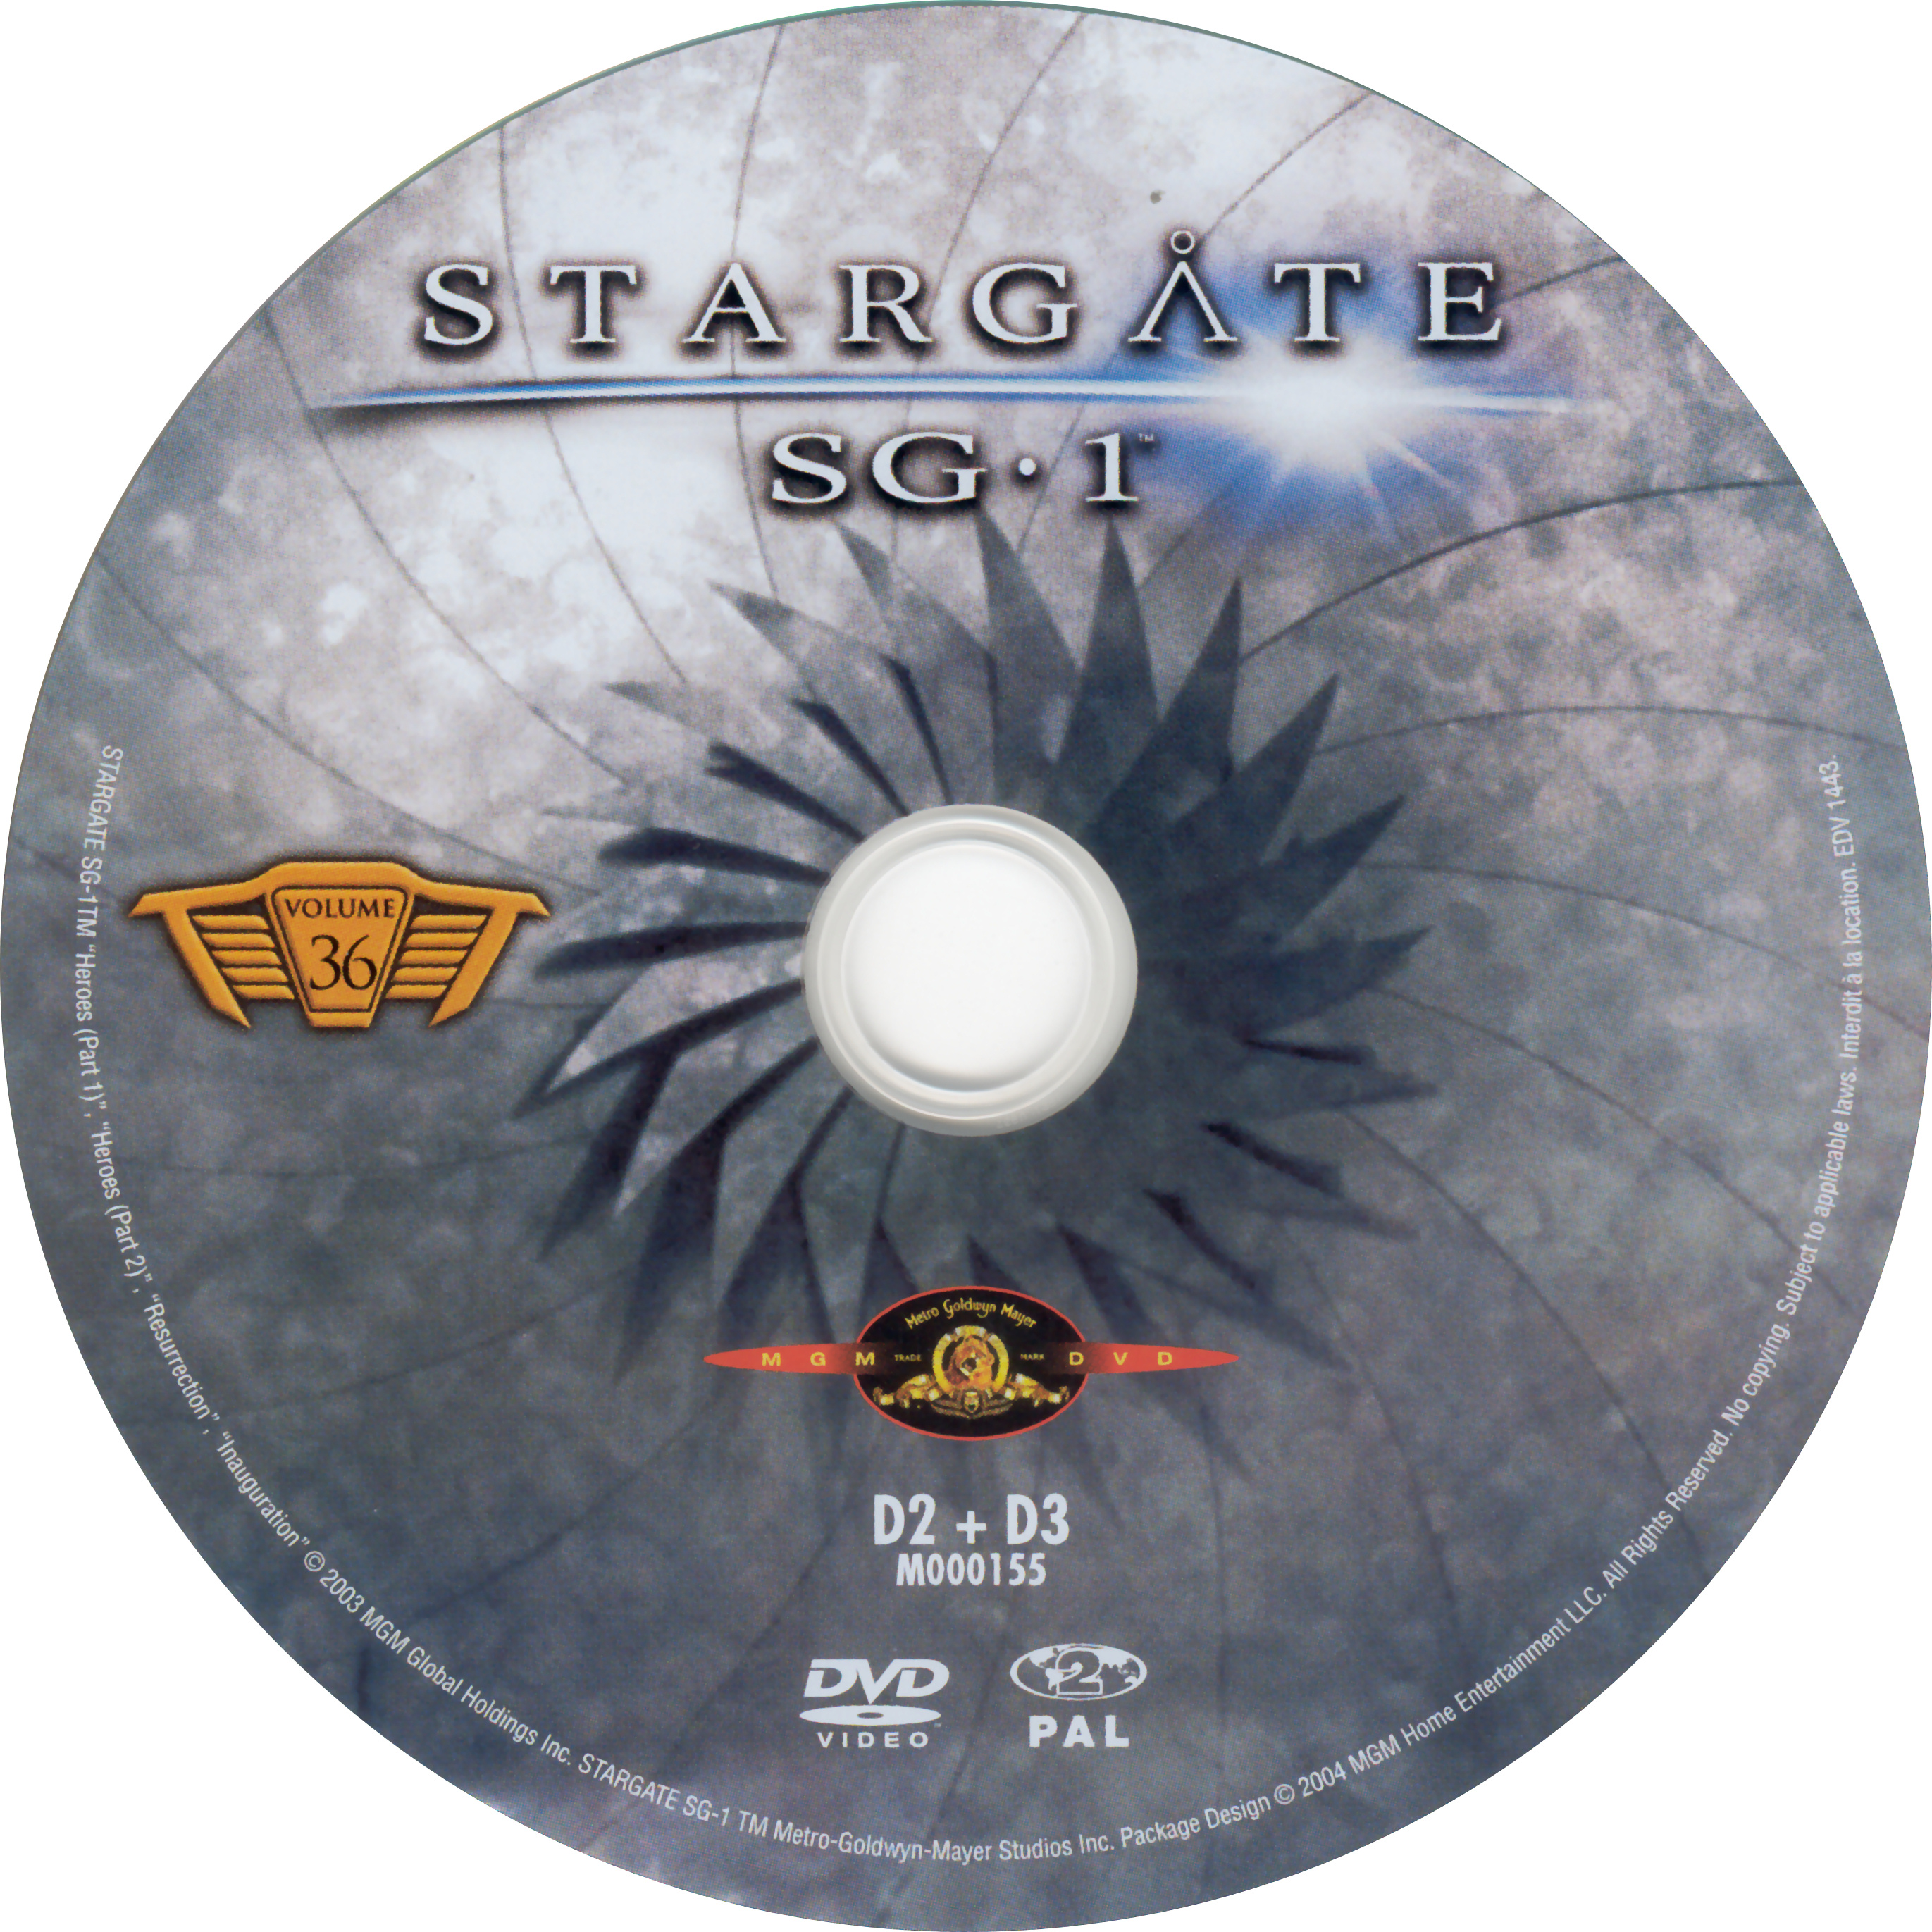 Stargate SG1 vol 36